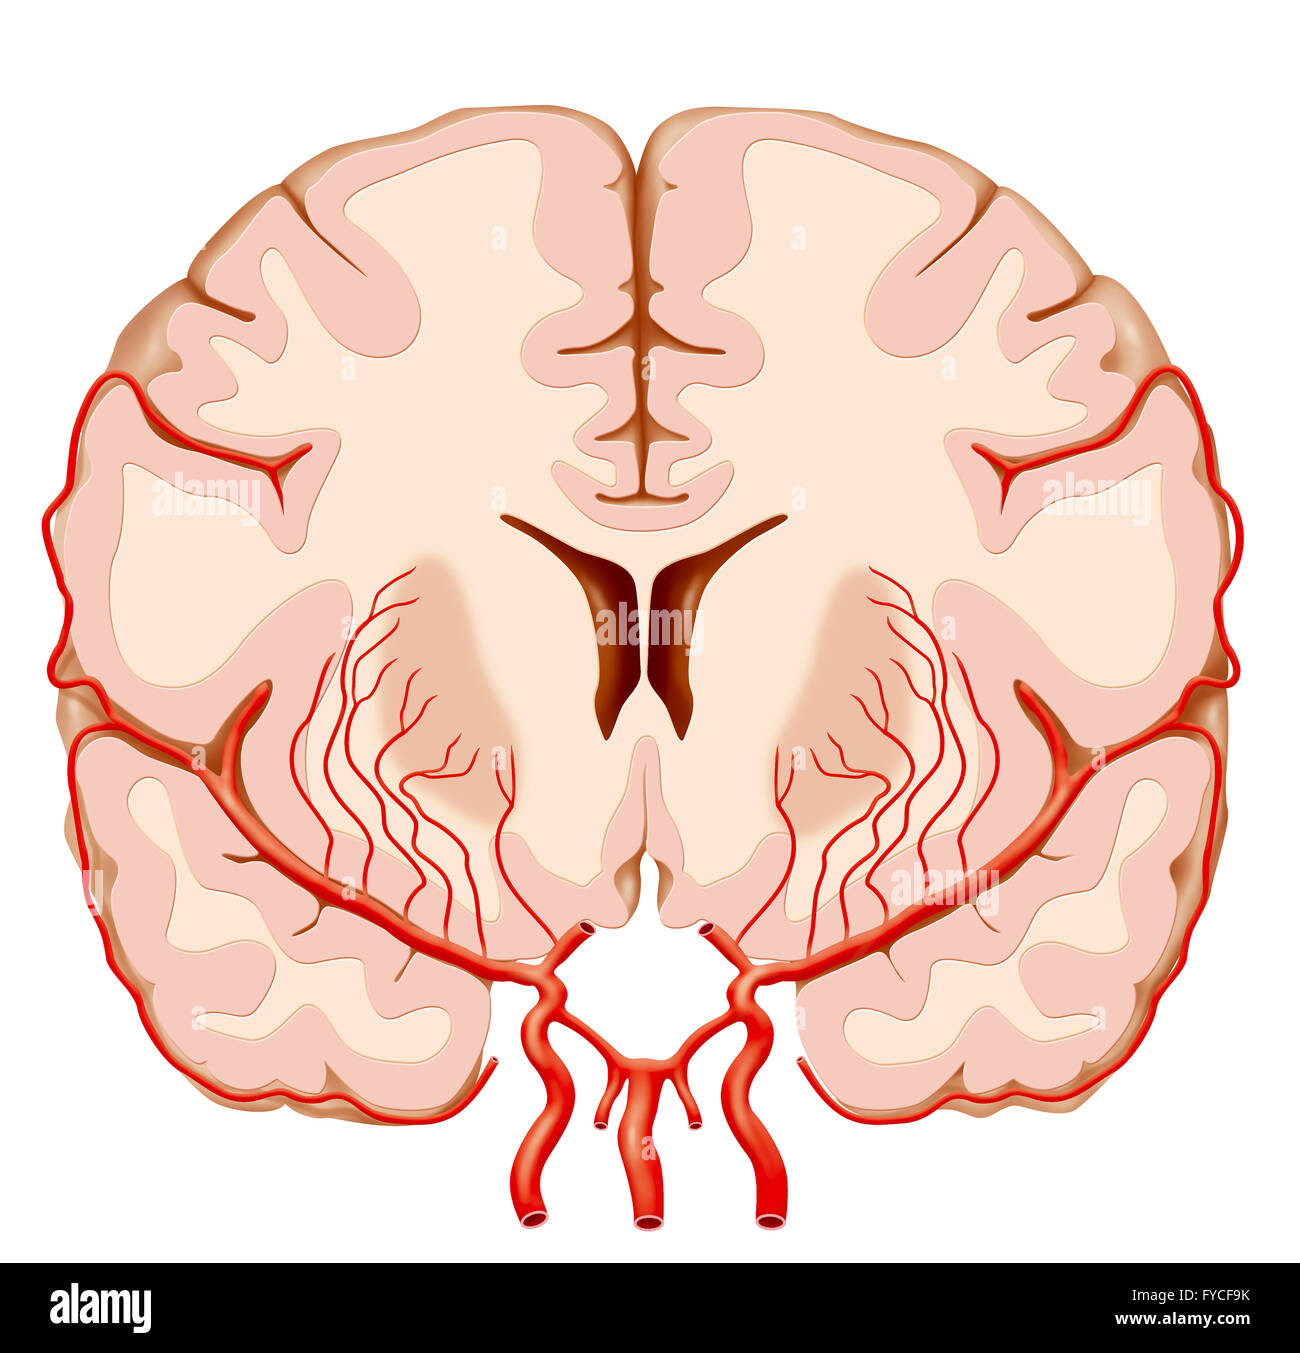 L'artère cérébrale, ILLUSTRATION Banque D'Images